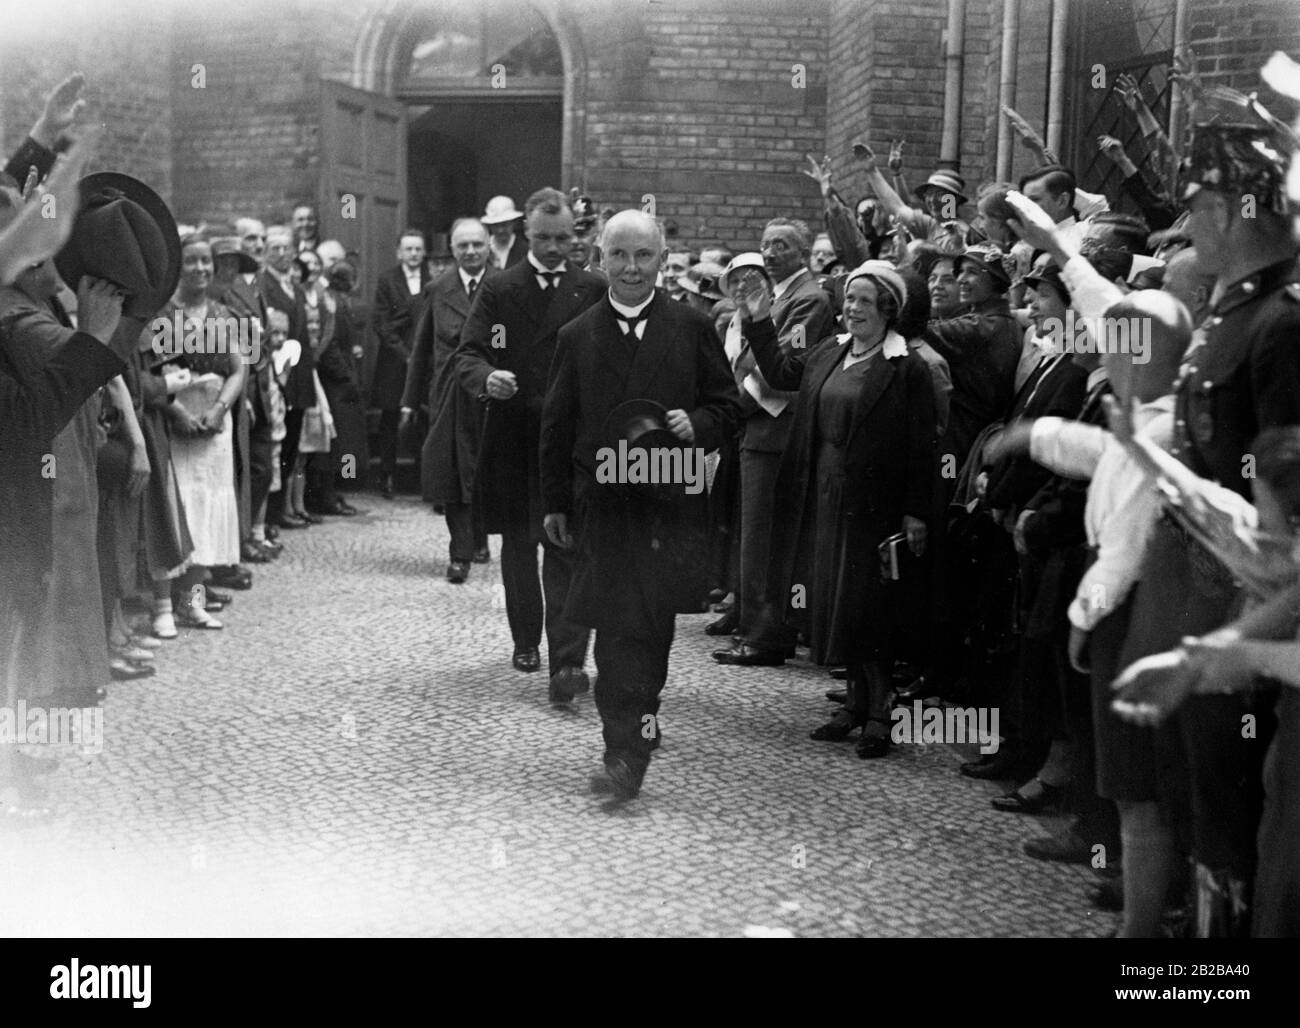 Nach einem Gottesdienst an der Zionskirche am pfingsten 1933 verlässt der Bischof Bodelschwingh die Kirche und wird von der wartenden Menge mit dem Nazi-Salut begrüßt. Stockfoto